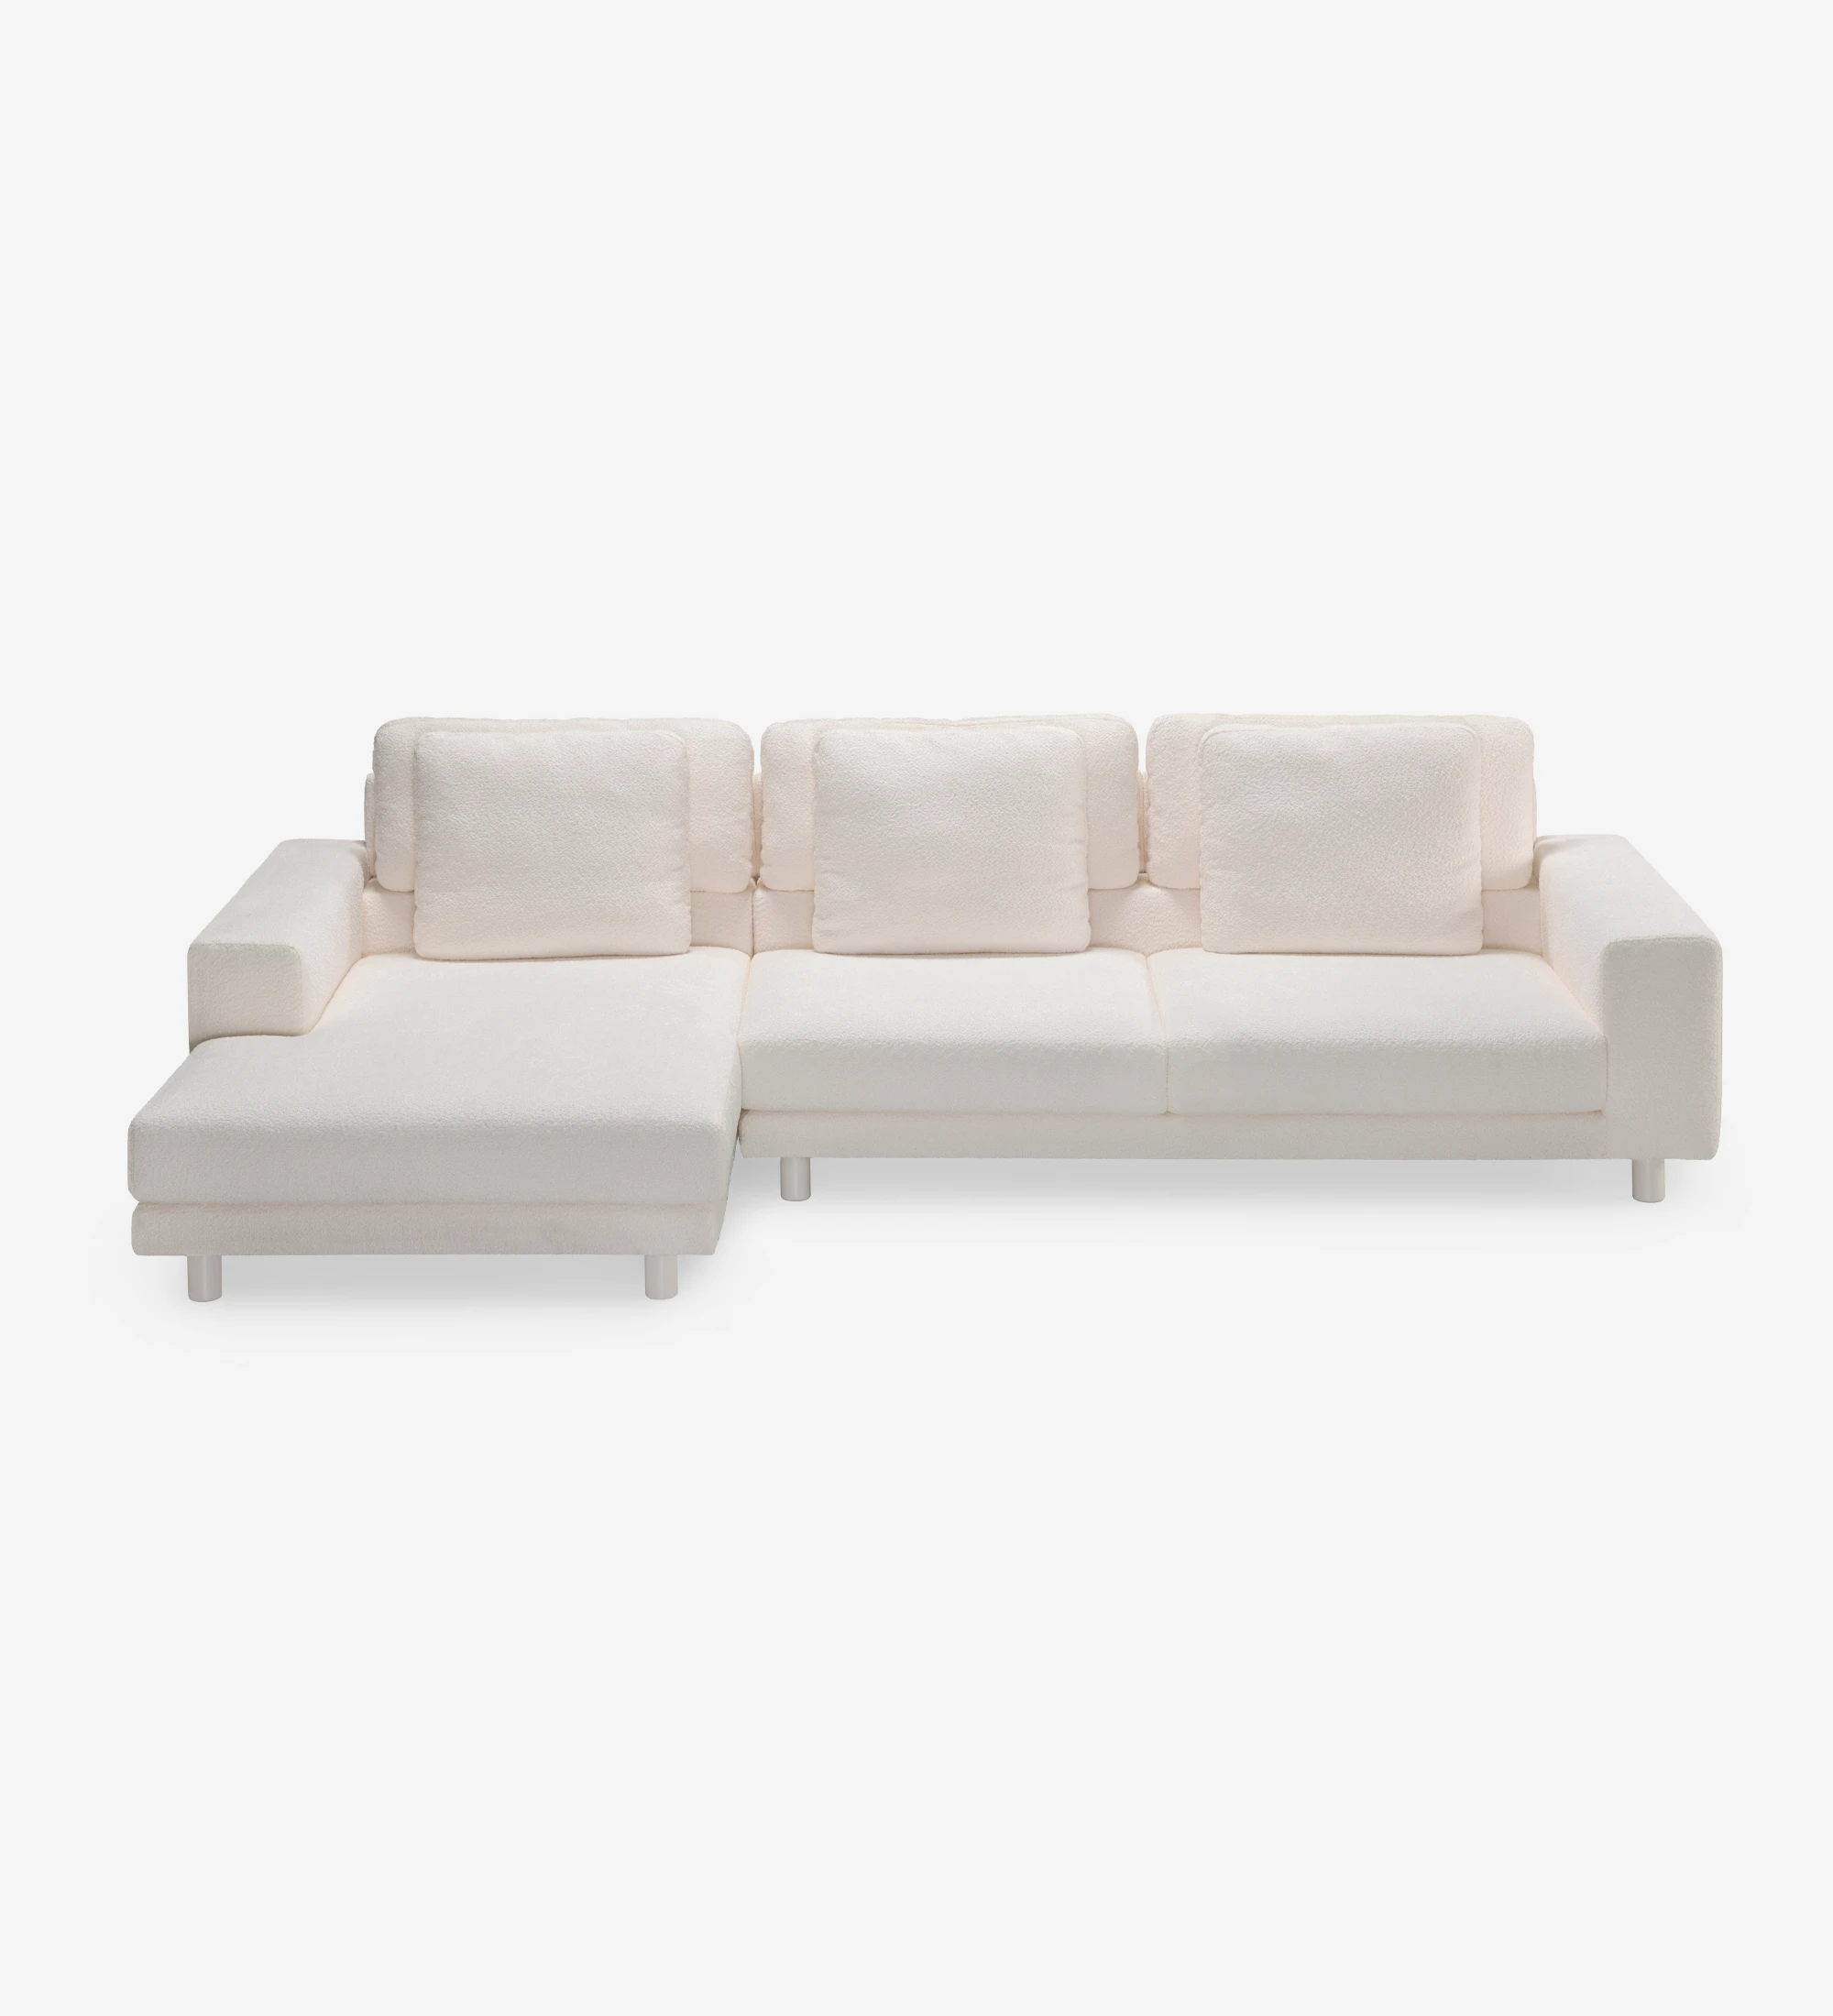 Sofá Dallas 3 plazas y chaise longue izquierda, tapizado en tela beige, cojines respaldo abatibles, pies lacados perla, 318 cm.